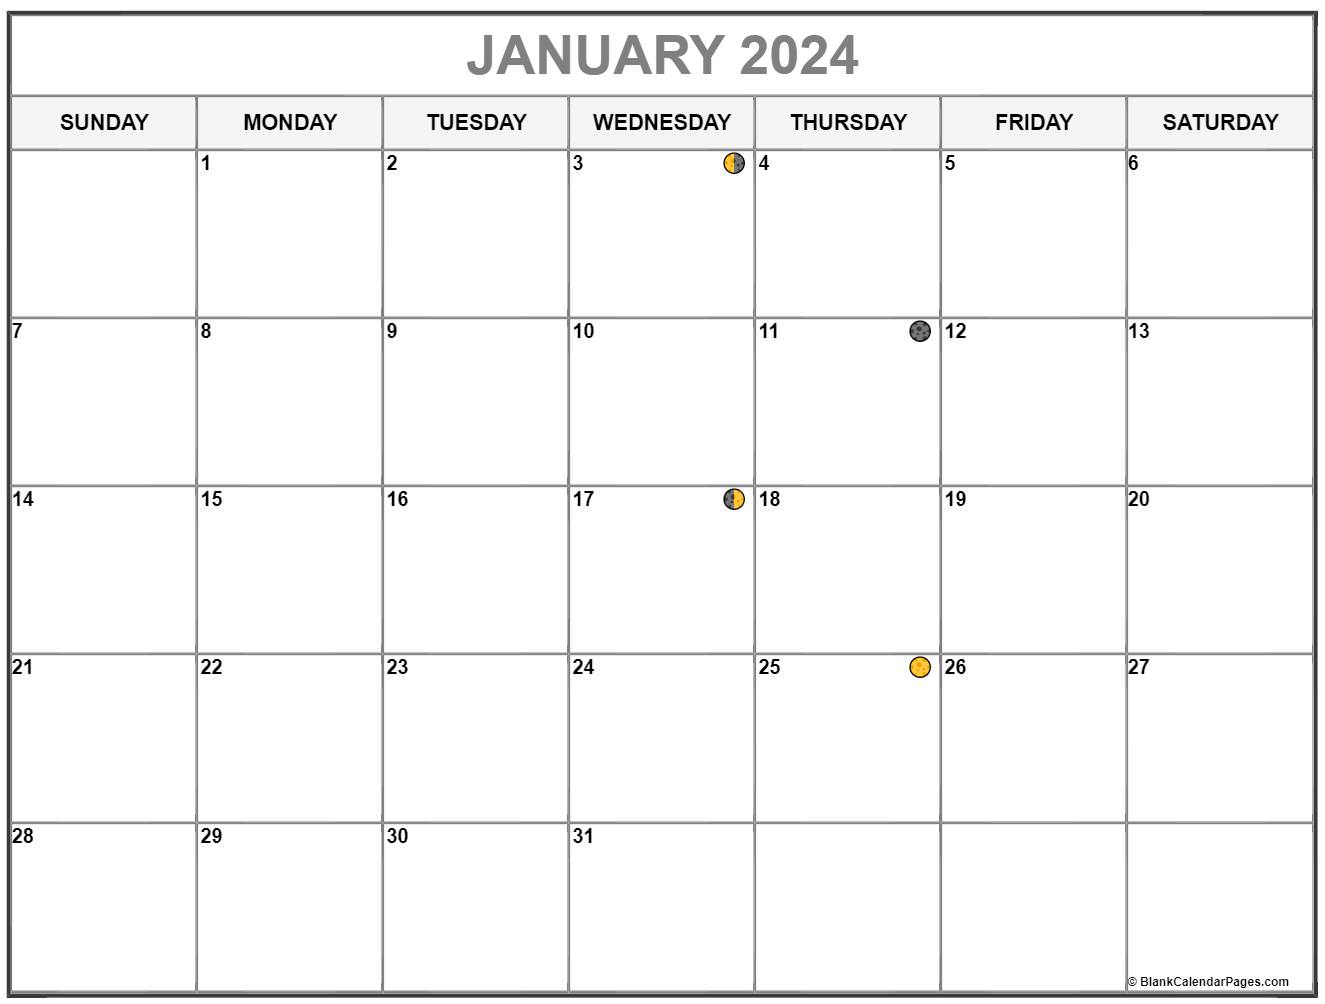 January 2024 Lunar Calendar Moon Phase Calendar